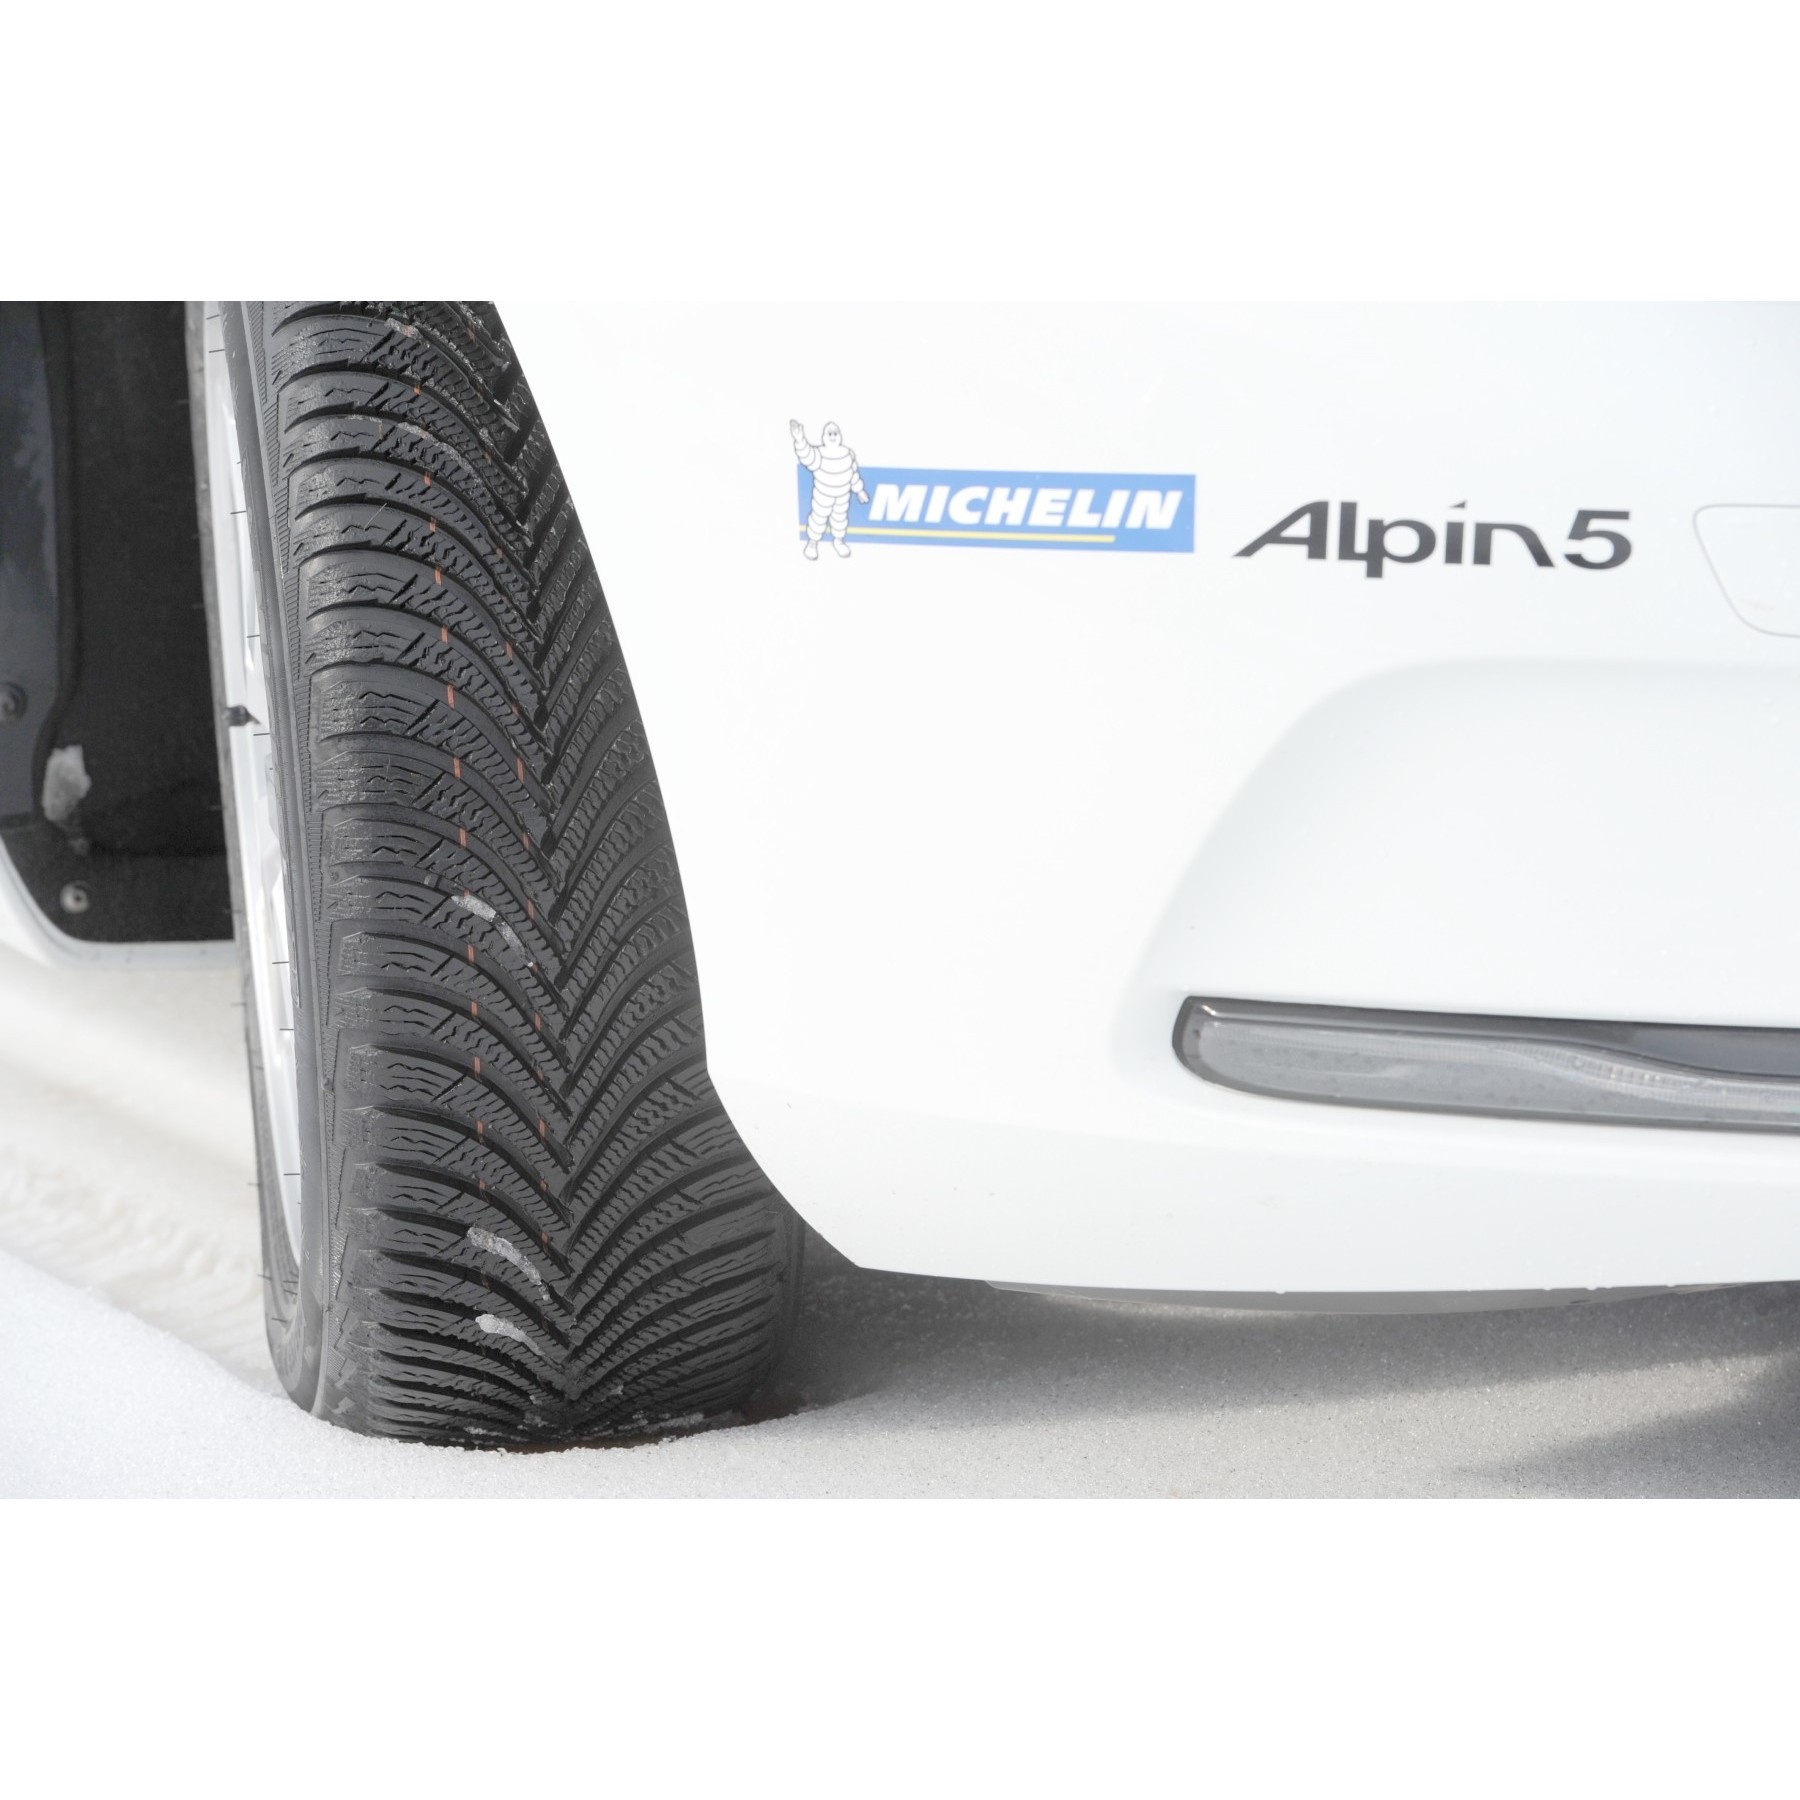 Michelin Alpin 5 195/55 R16 91H